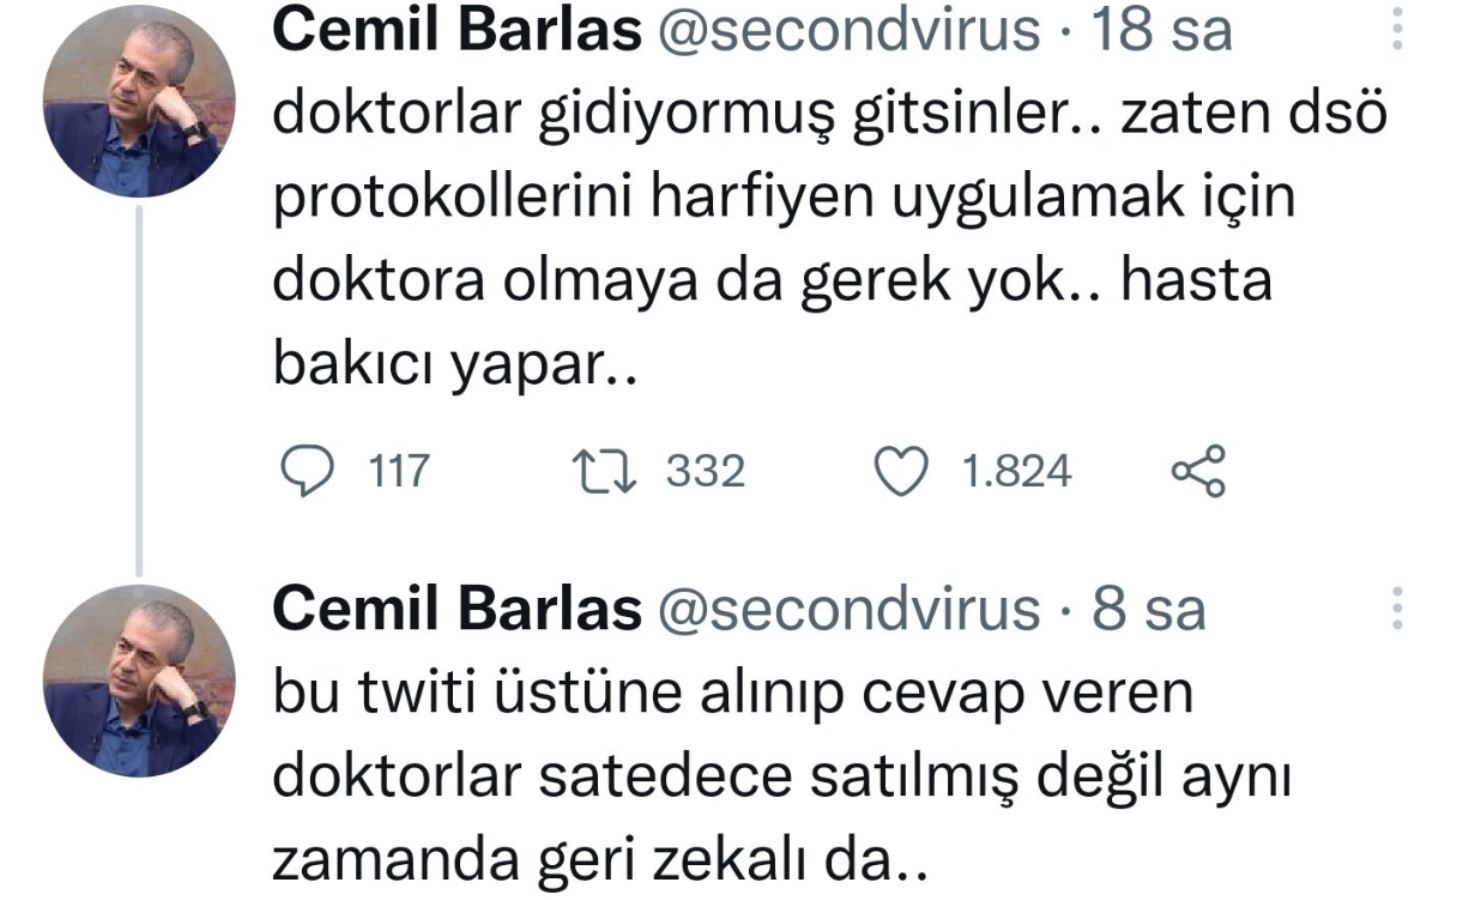 Erdoğan'a 'Cemil Barlas' desteği: Hasta bakıcı da yapar